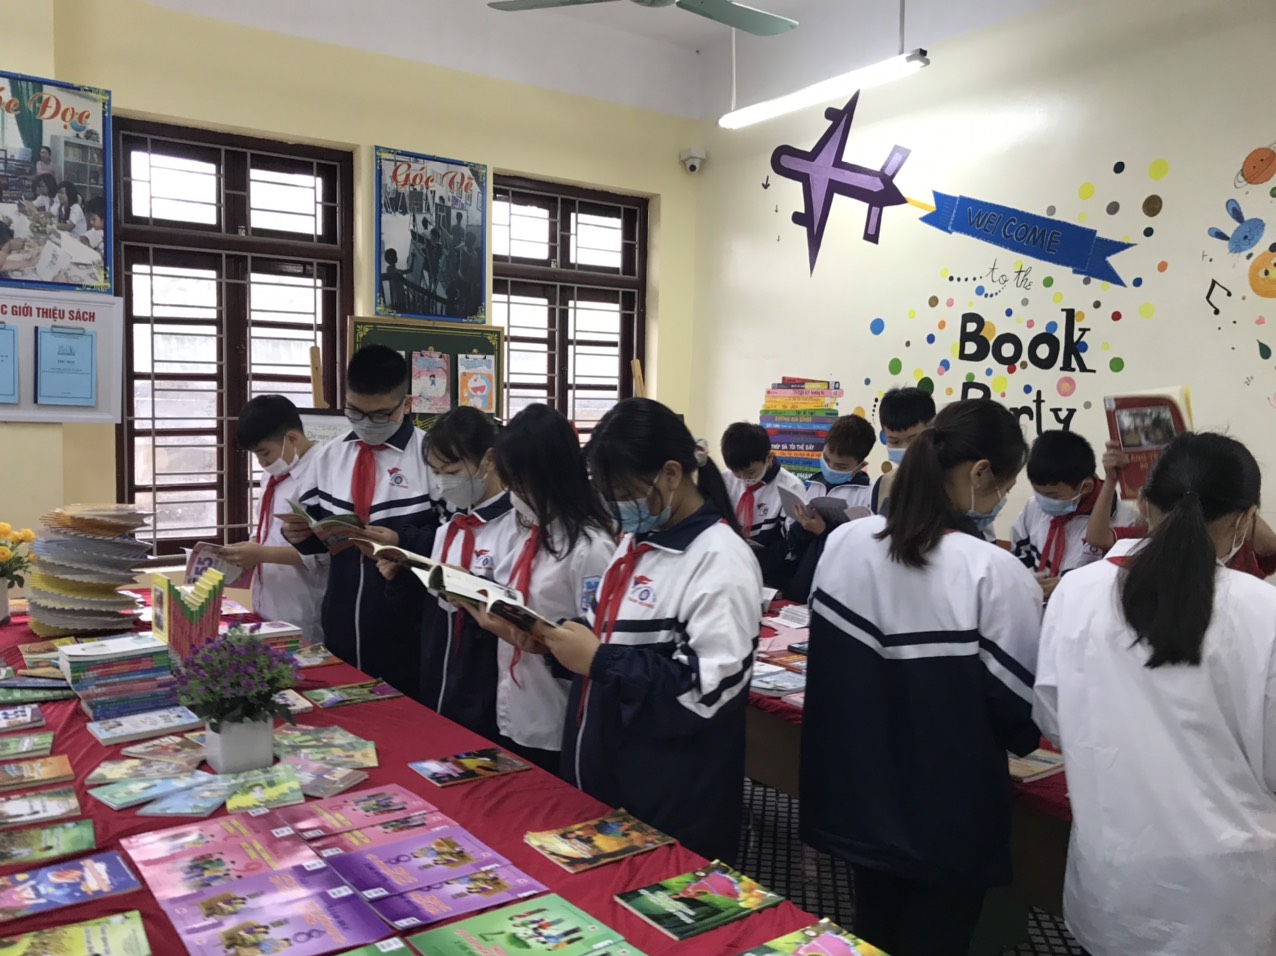 Hưởng ứng các hoạt động của Ngày Sách Việt Nam 21/4, thư viện trường THCS Tam Hưng tiến hành trưng bày giới thiệu tranh và sách từ ngày 20/4/2022-25/4/202.